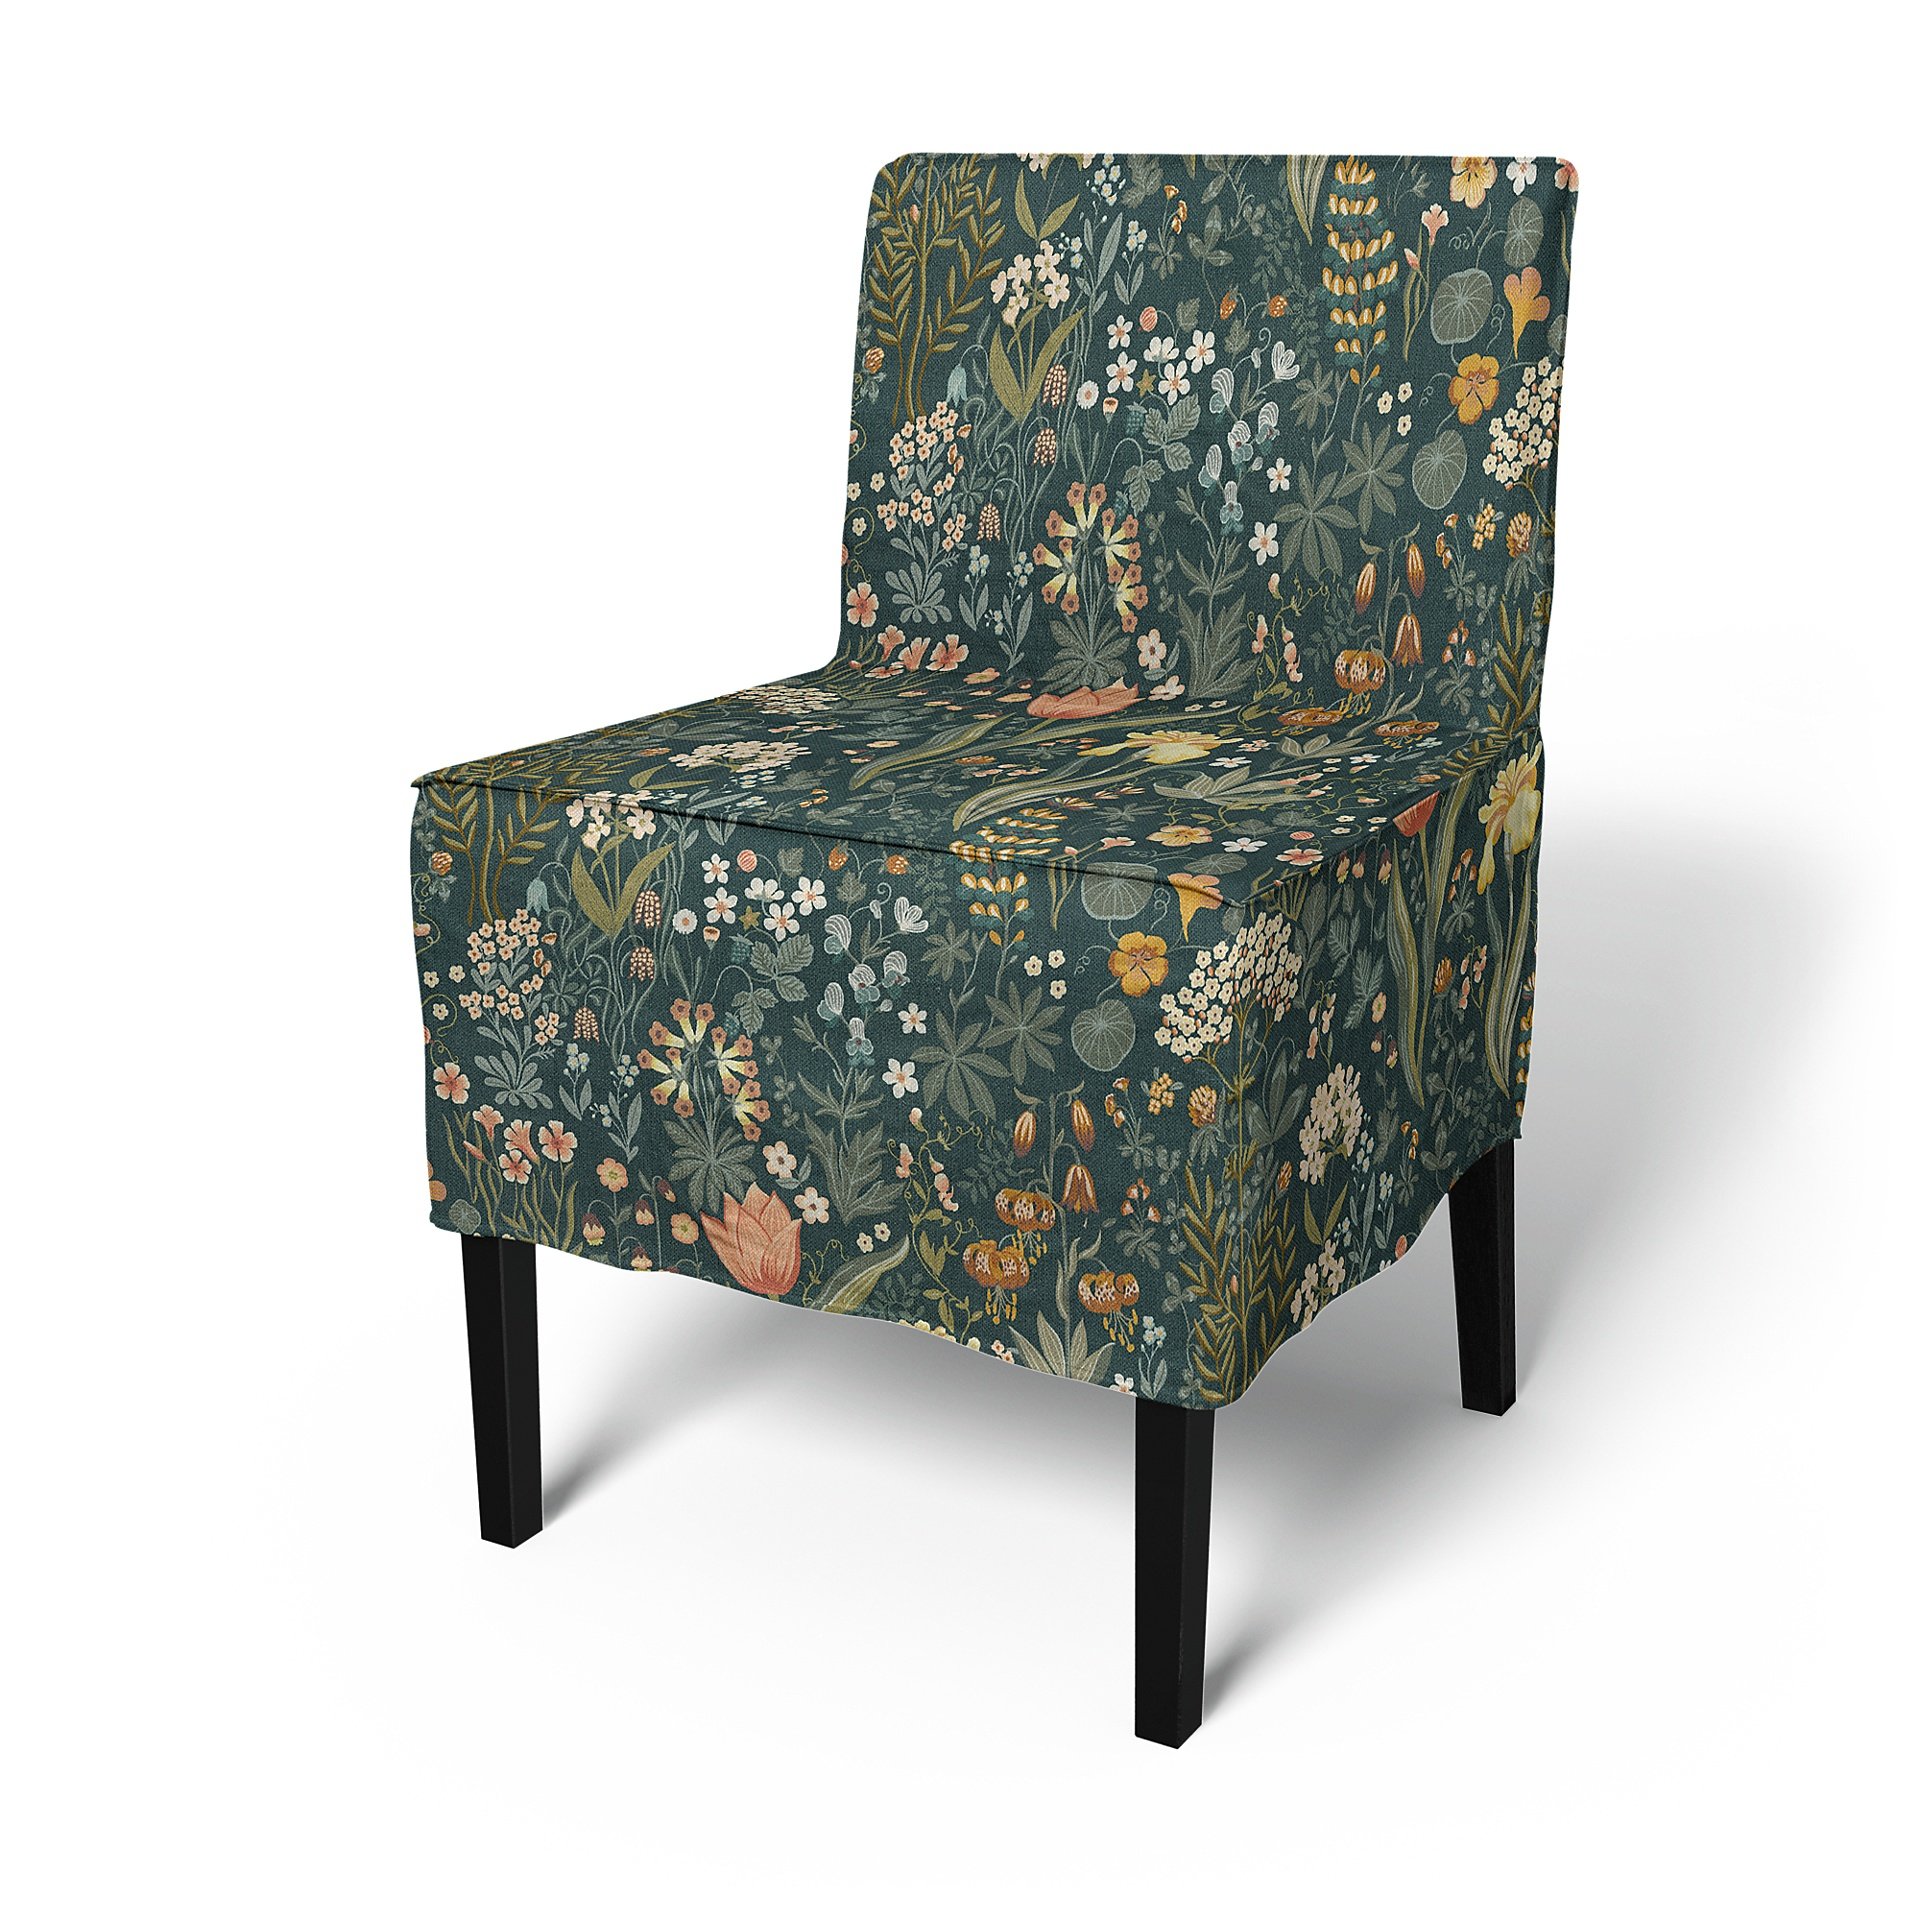 IKEA - Nils Dining Chair Cover, Blomsterhav Dark, BEMZ x BORASTAPETER COLLECTION - Bemz